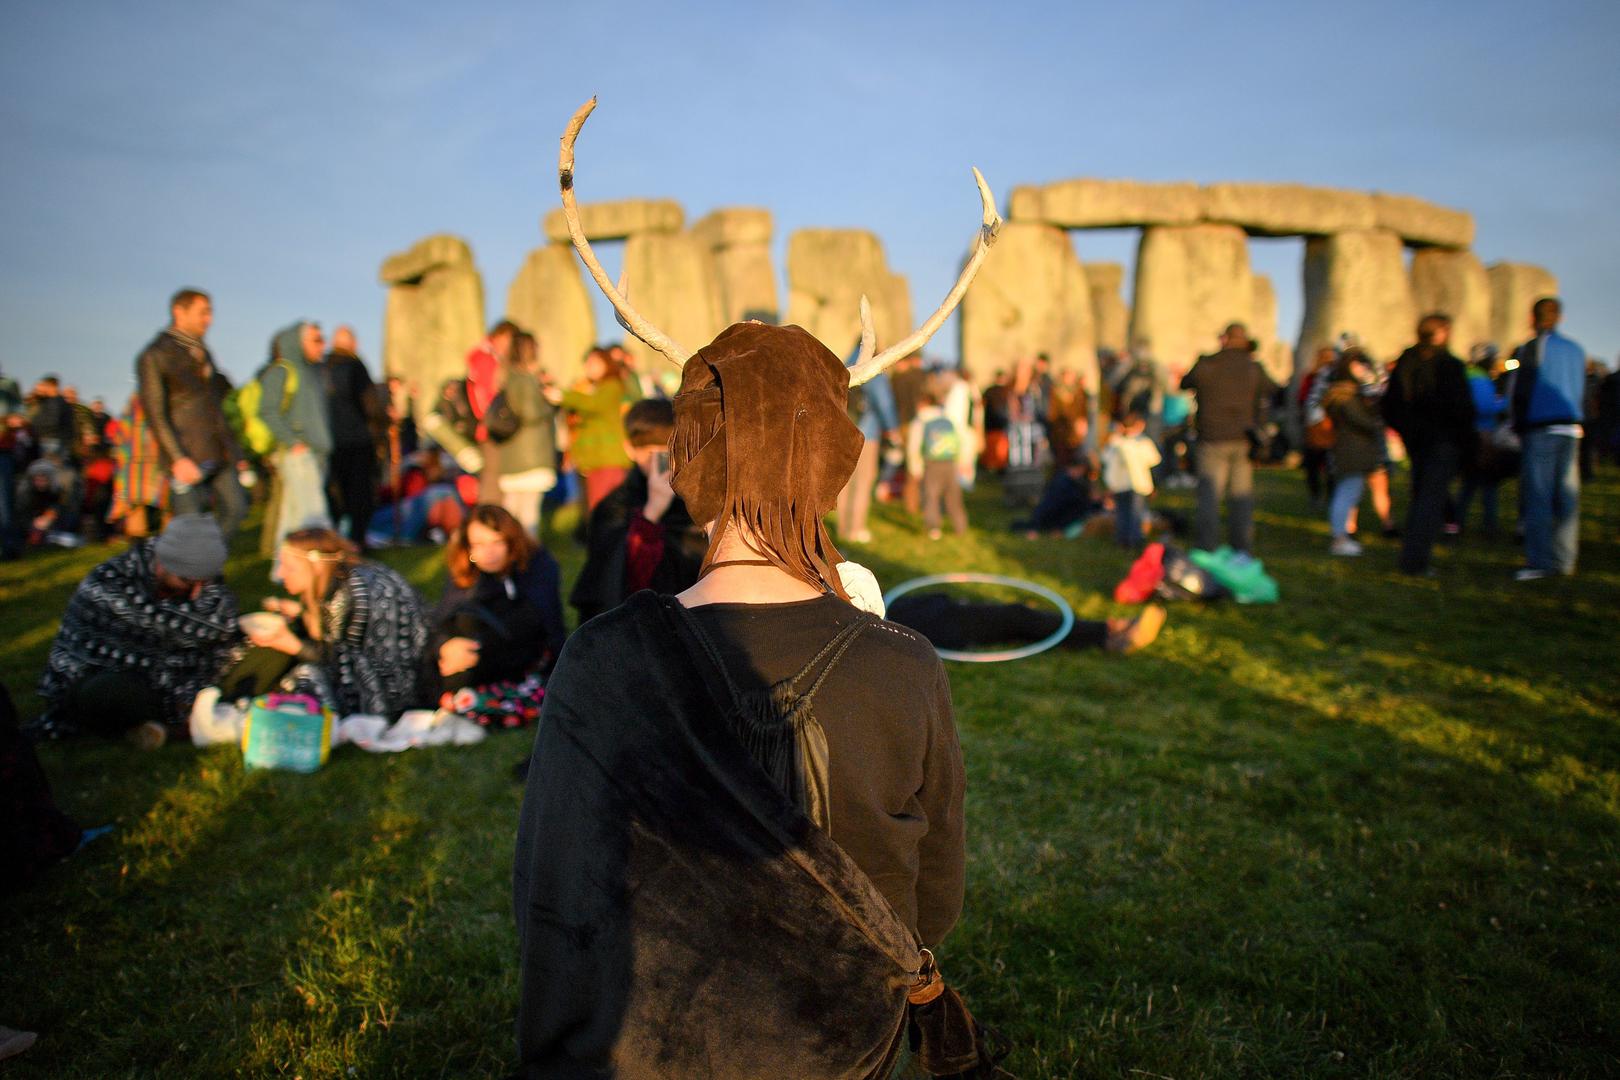 Baš kao i zimski solsticij, ljetni solsticij ima veliko značenje za pagane, drevne i moderne. Sjeverno-europski pagani još uvijek slave ljetni solsticij festivalom Midsummer, gdje se mnogi okupljaju kako bi gledali sunce kako dosiže najvišu točku u monolitnim strukturama Stonehengea.